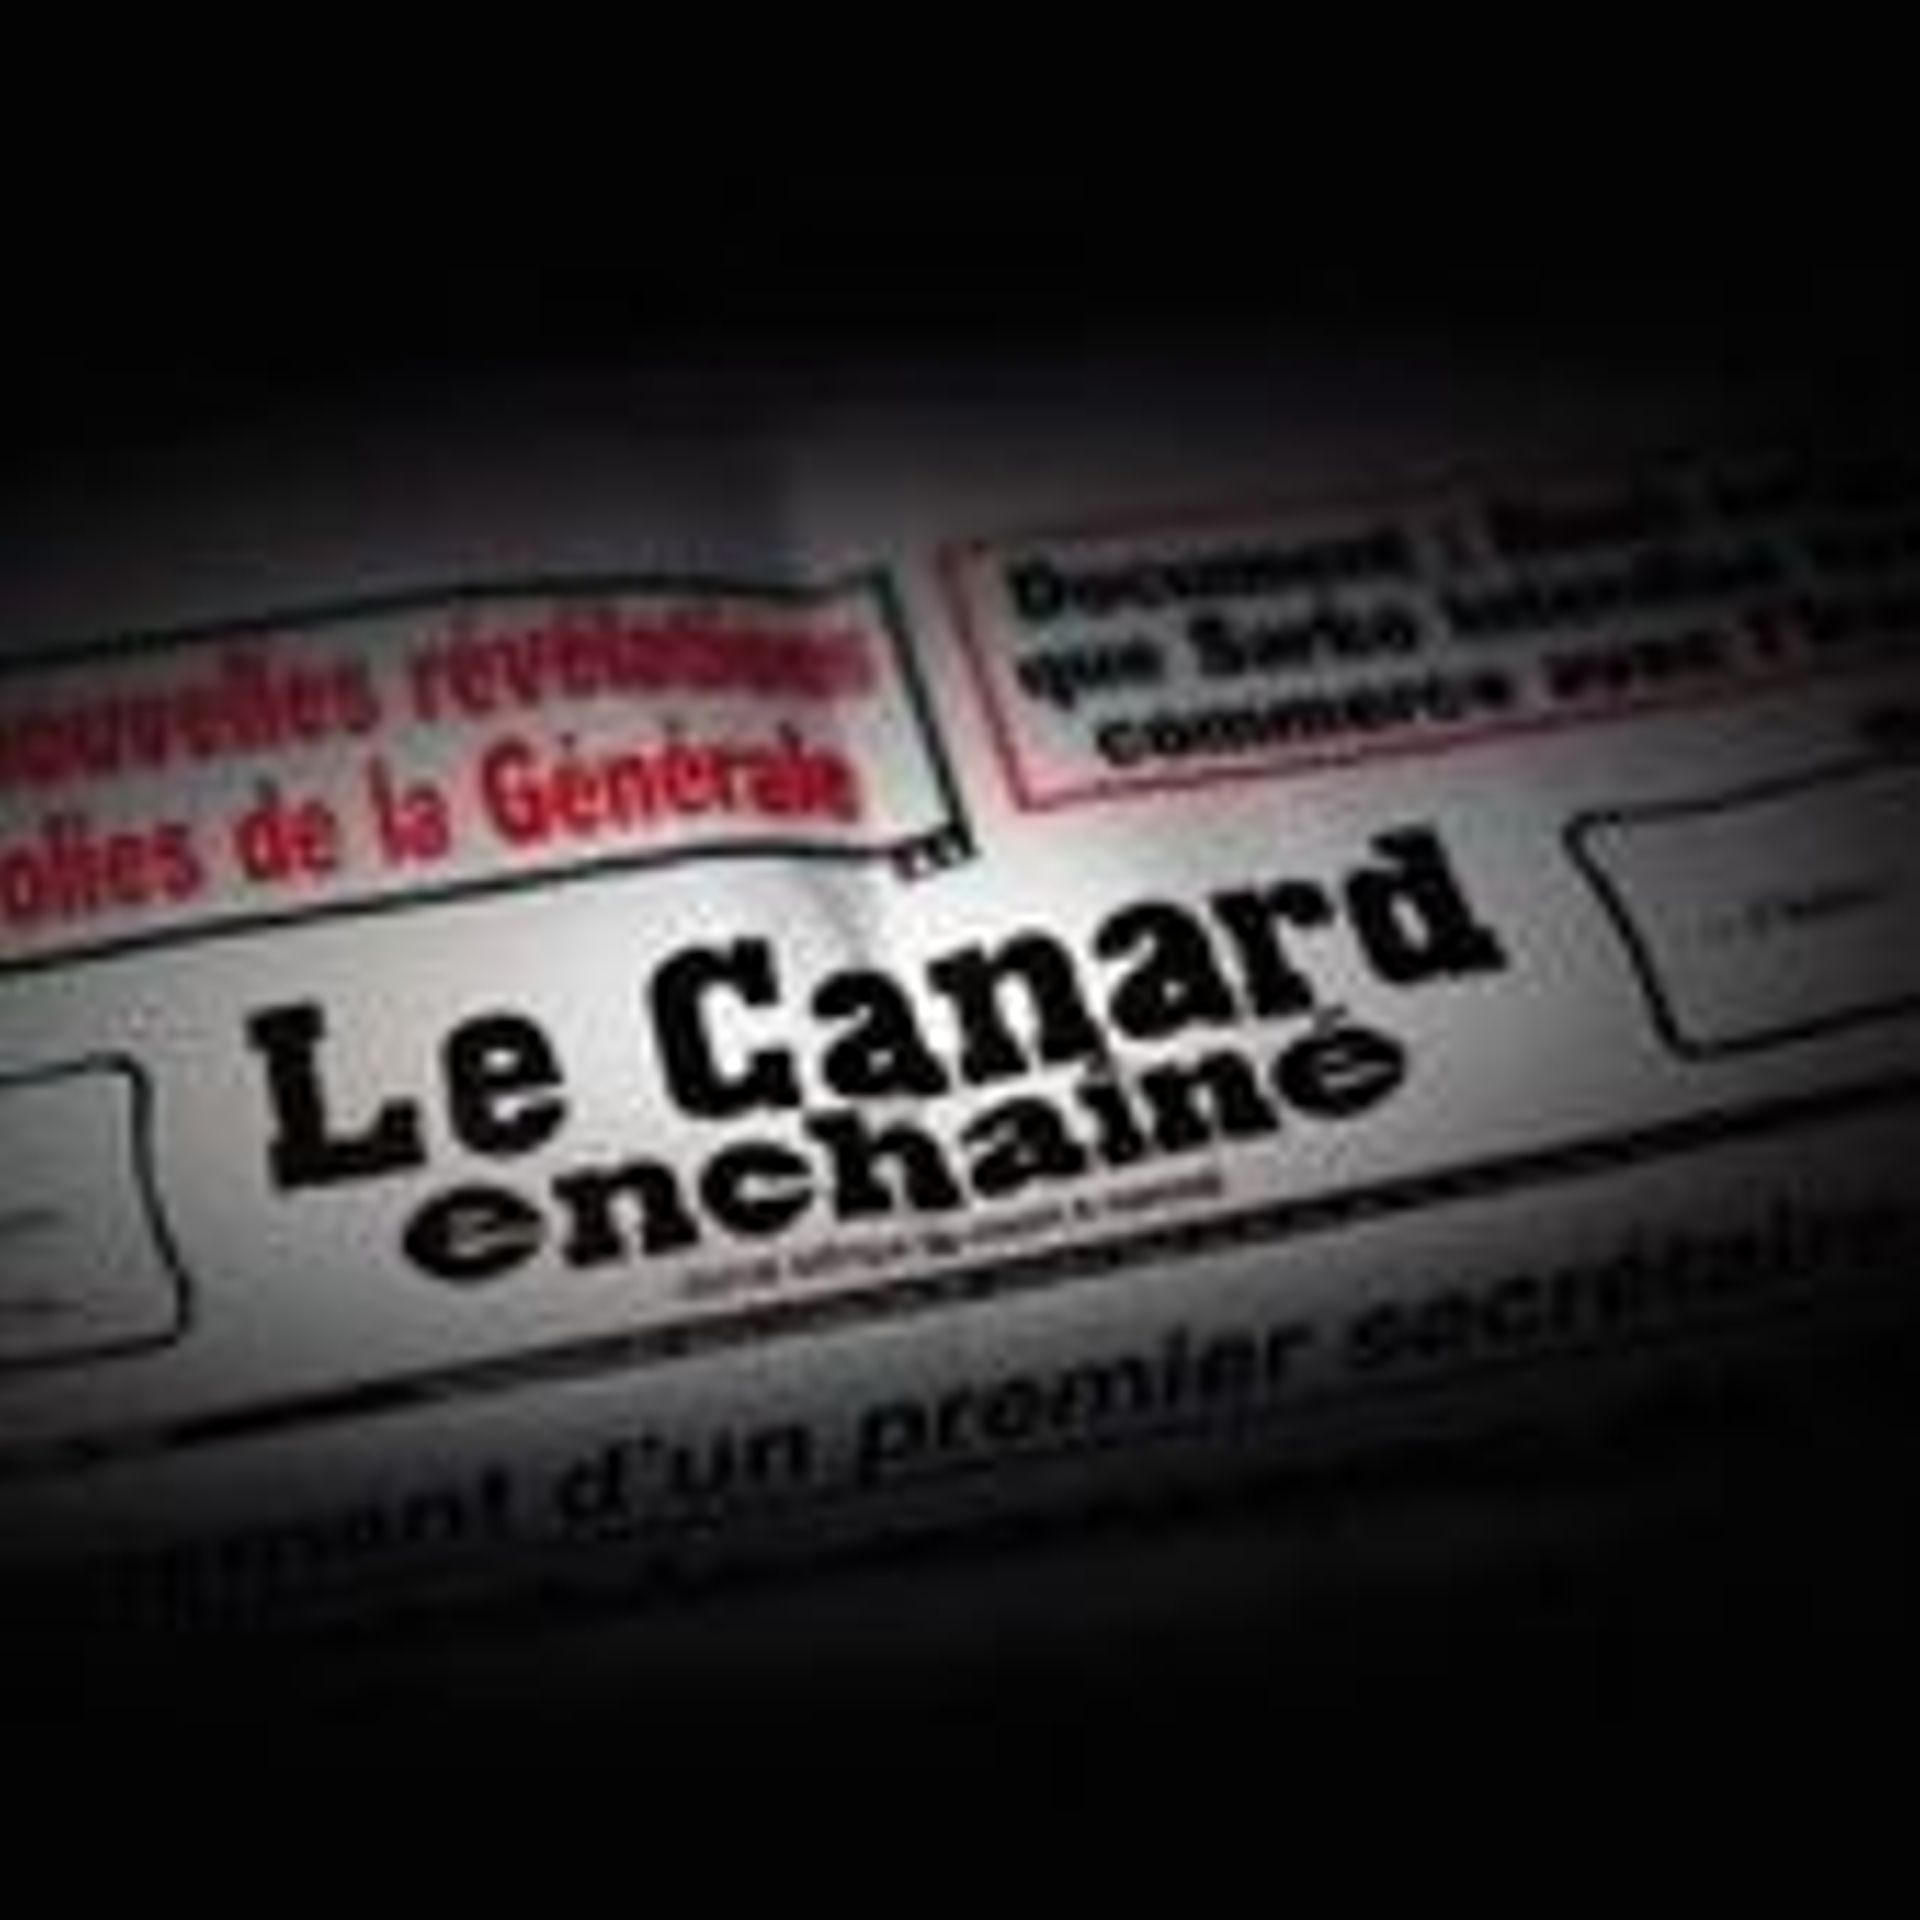 Septembre 1915: le Canard Enchaîné se déchaine - rtbf.be